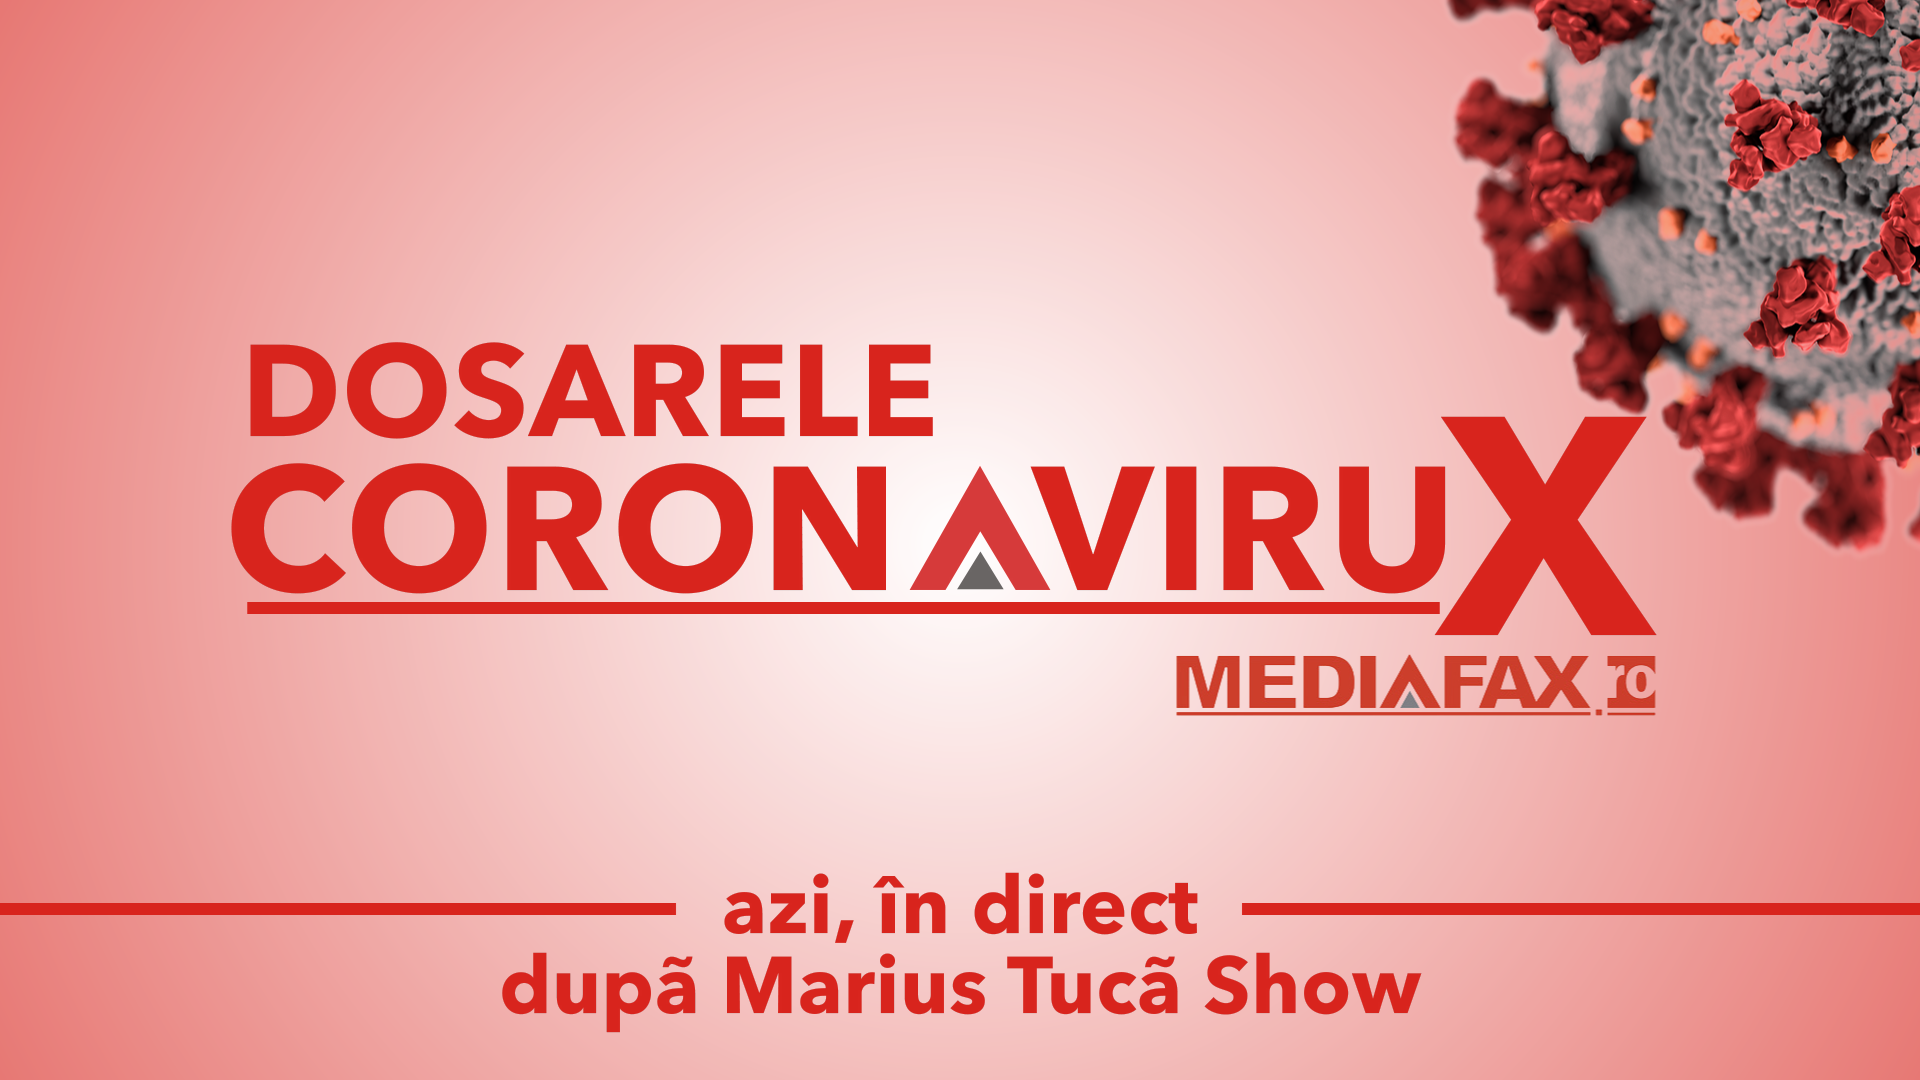 Dosarele Coronavirux azi LIVE pe Mediafax după Marius Tucă Show